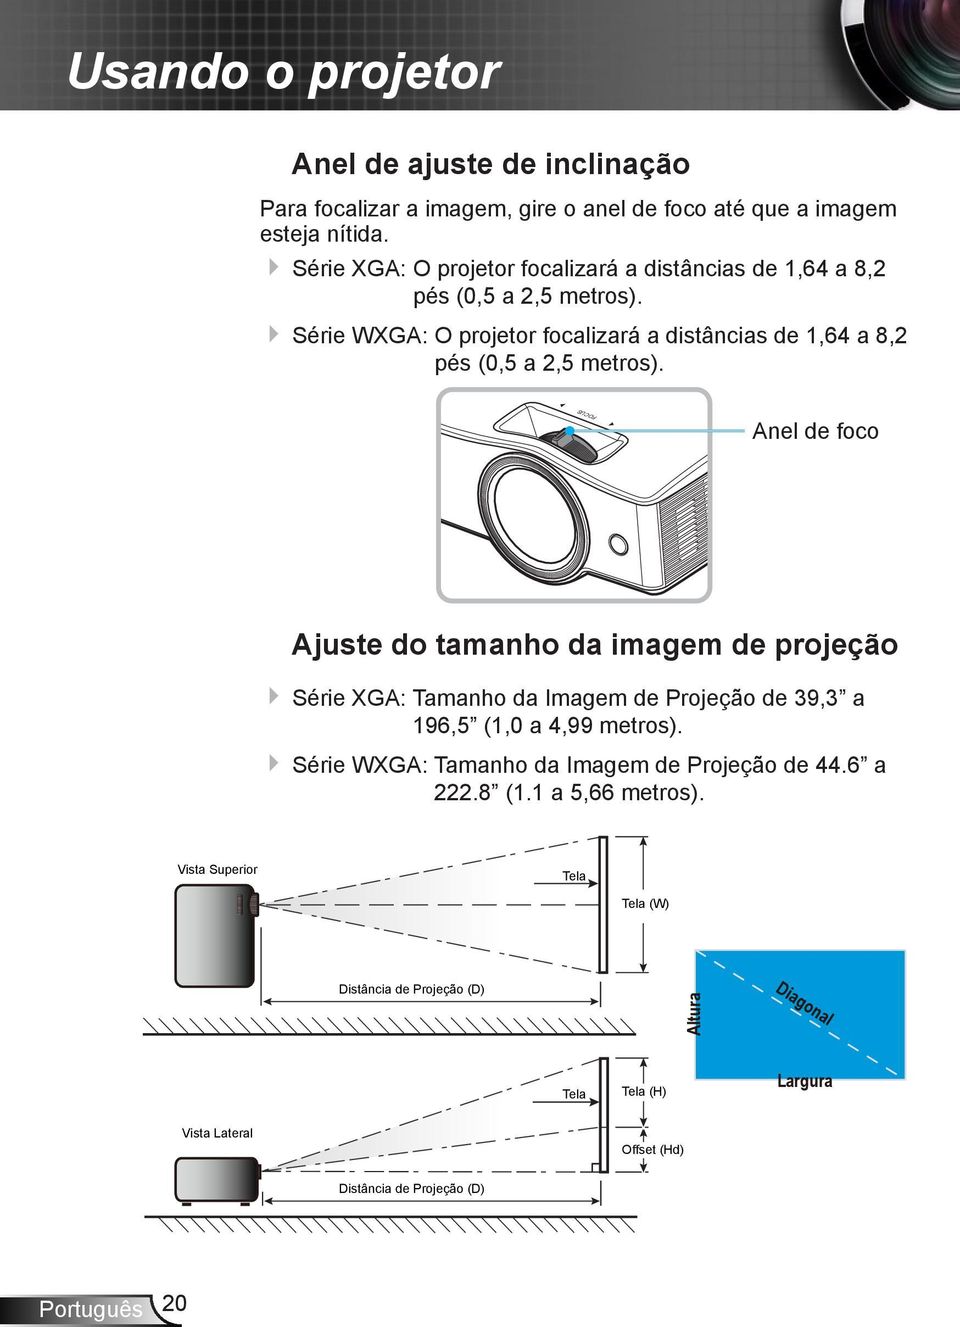 Série WXGA: O projetor focalizará a distâncias de 1,64 a 8,2 pés (0,5 a 2,5 metros).